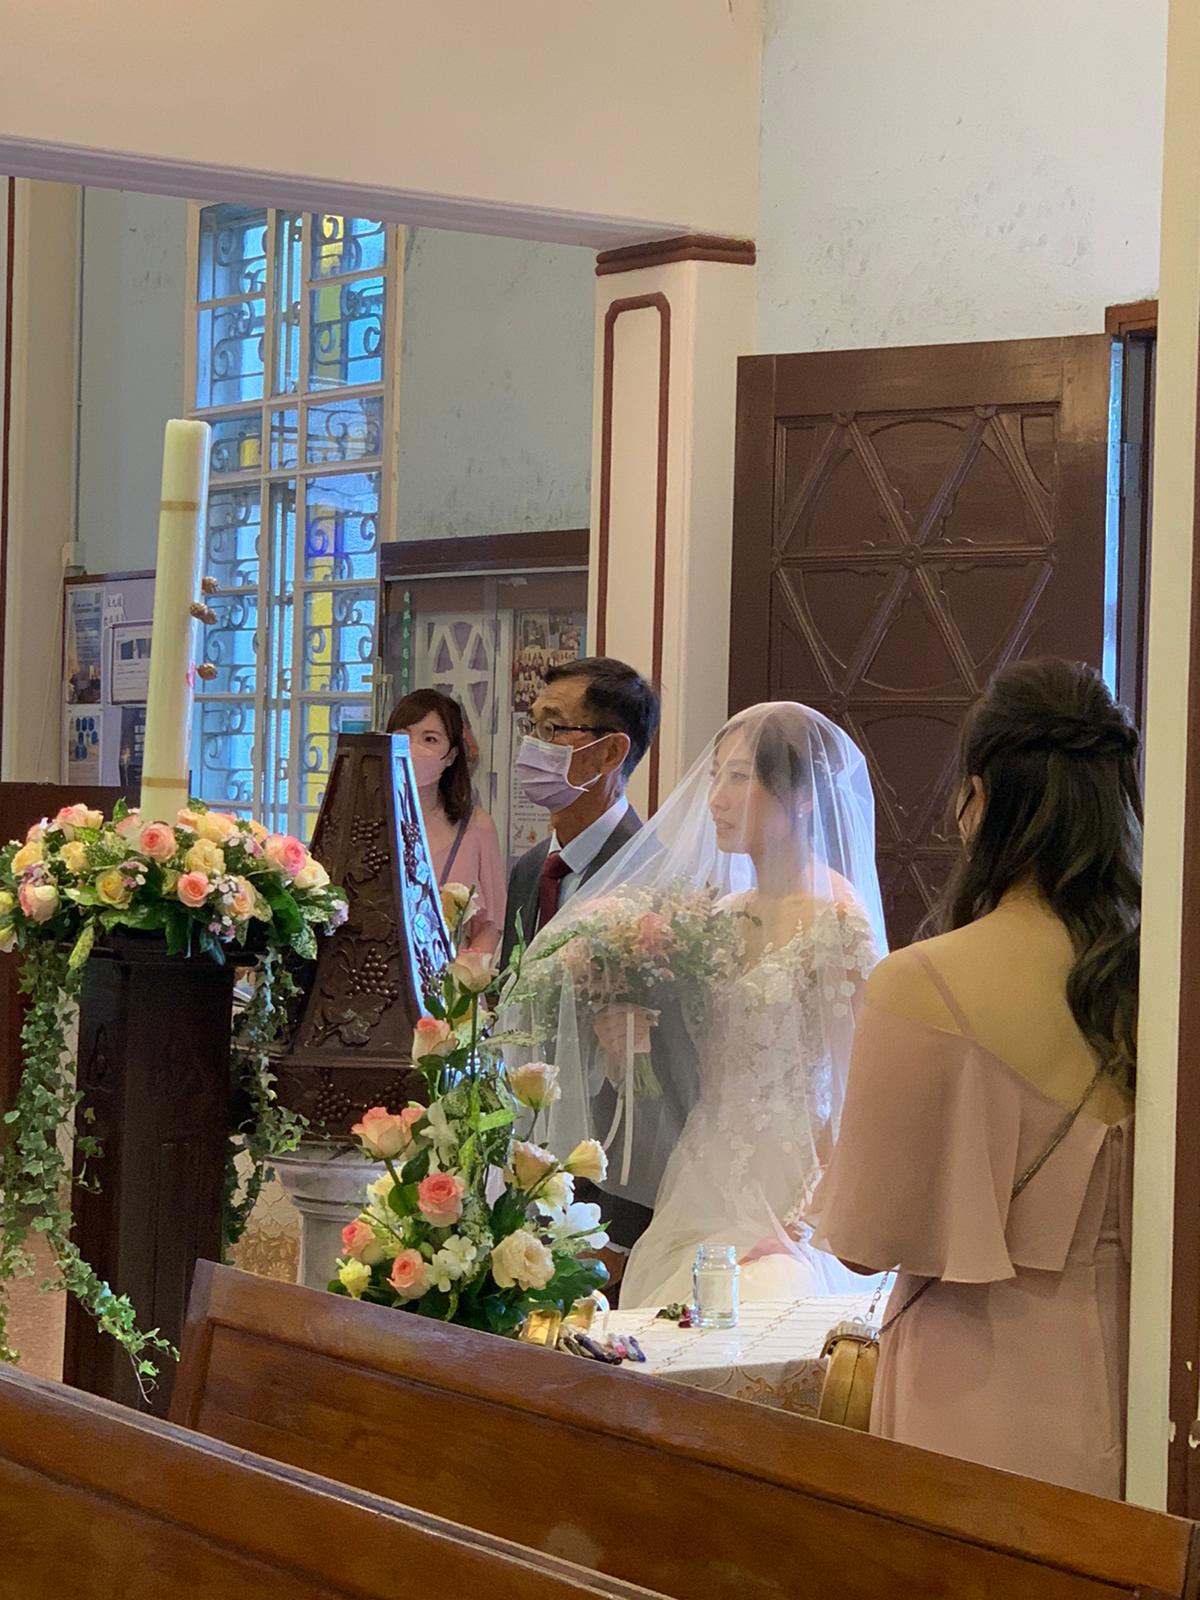 Queeny Ng婚禮統籌師工作紀錄: 200 人來教堂祝福這對新人，真的感恩